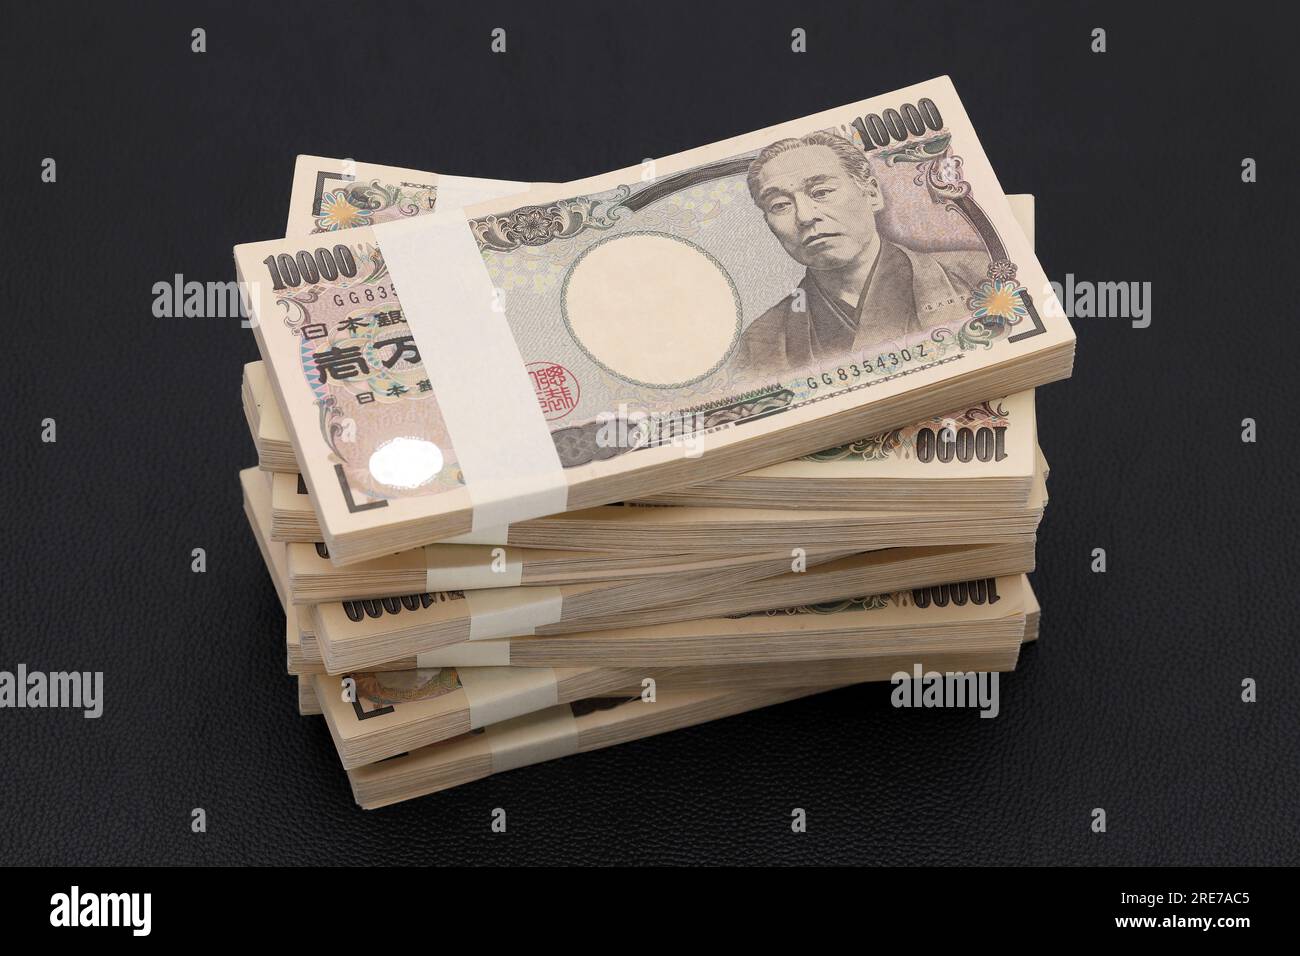 Ein Haufen japanischer Yen. 10.000 Yen Scheine. Die Banknoten werden auf Japanisch als "10.000 Yen" geschrieben. Stockfoto